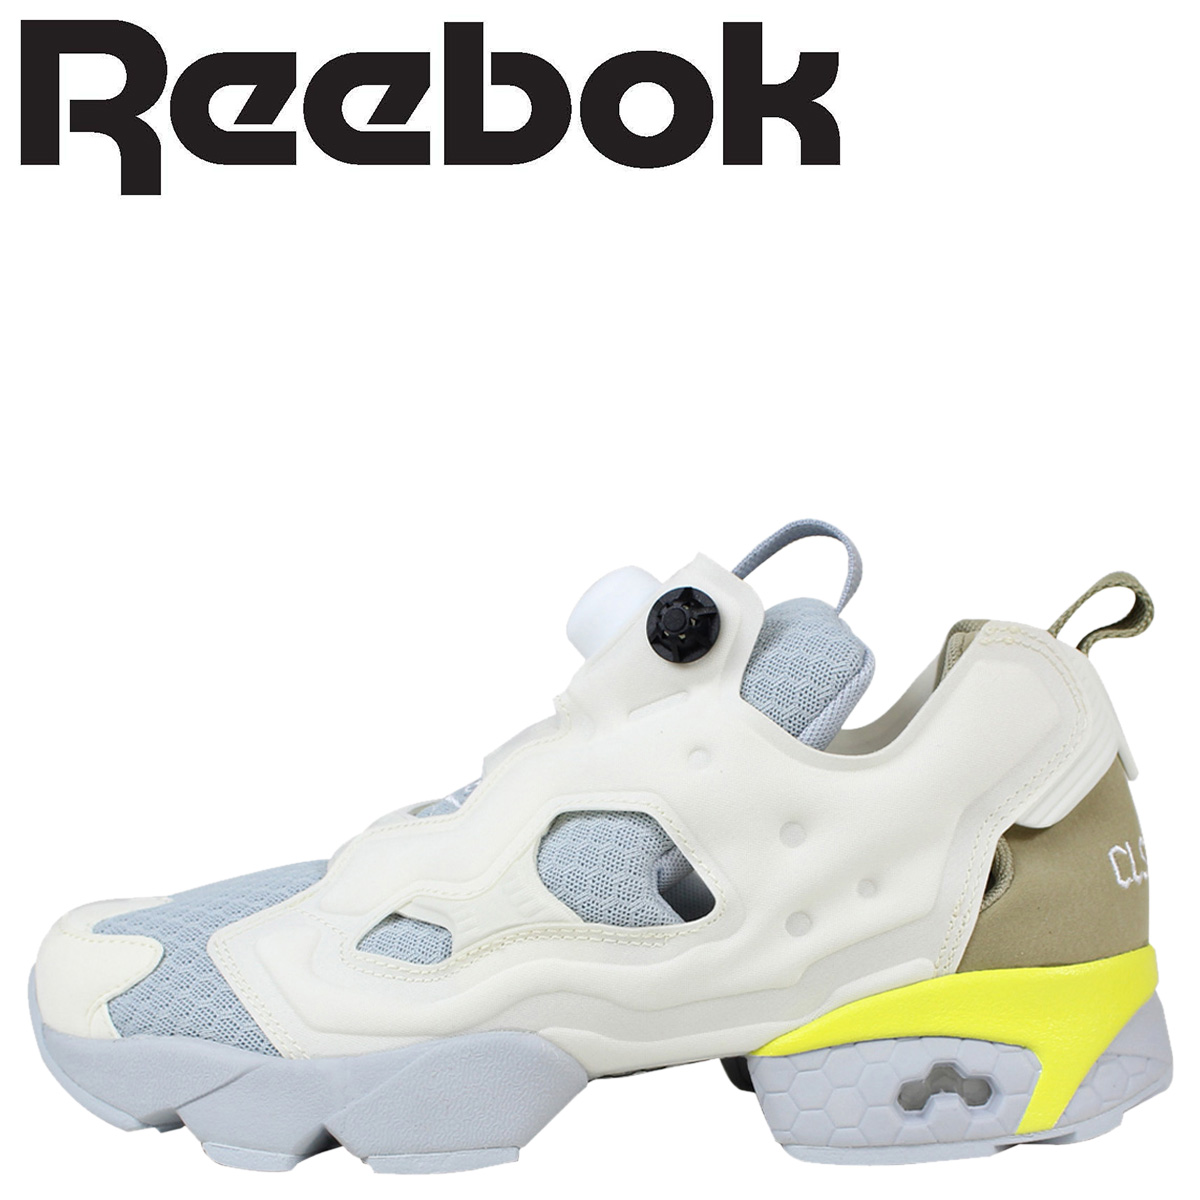 buy reebok pump shoes online